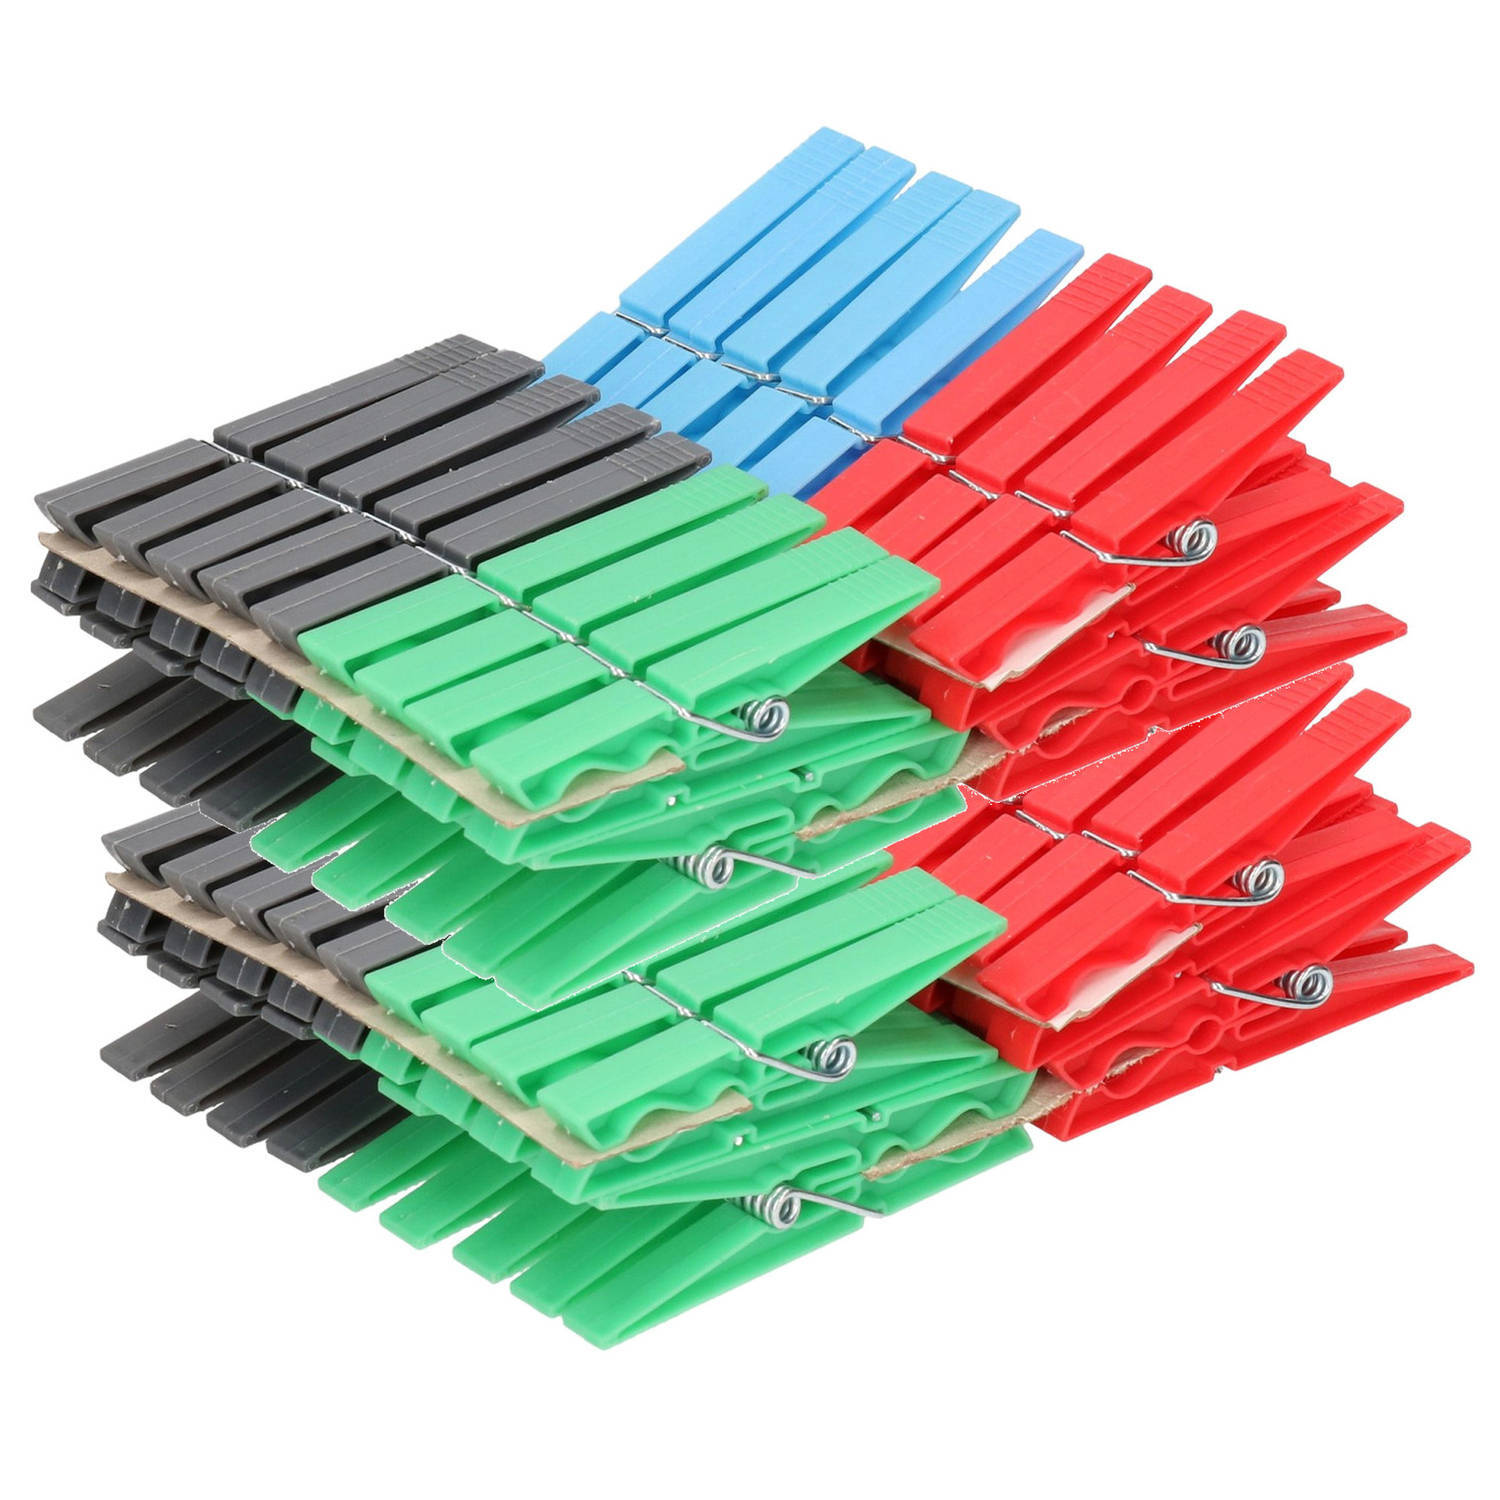 Sorbo 180x Gekleurde wasknijpers - Plastic wasgoedknijpers - Knijpers/wasspelden voor wasgoed 180 stuks